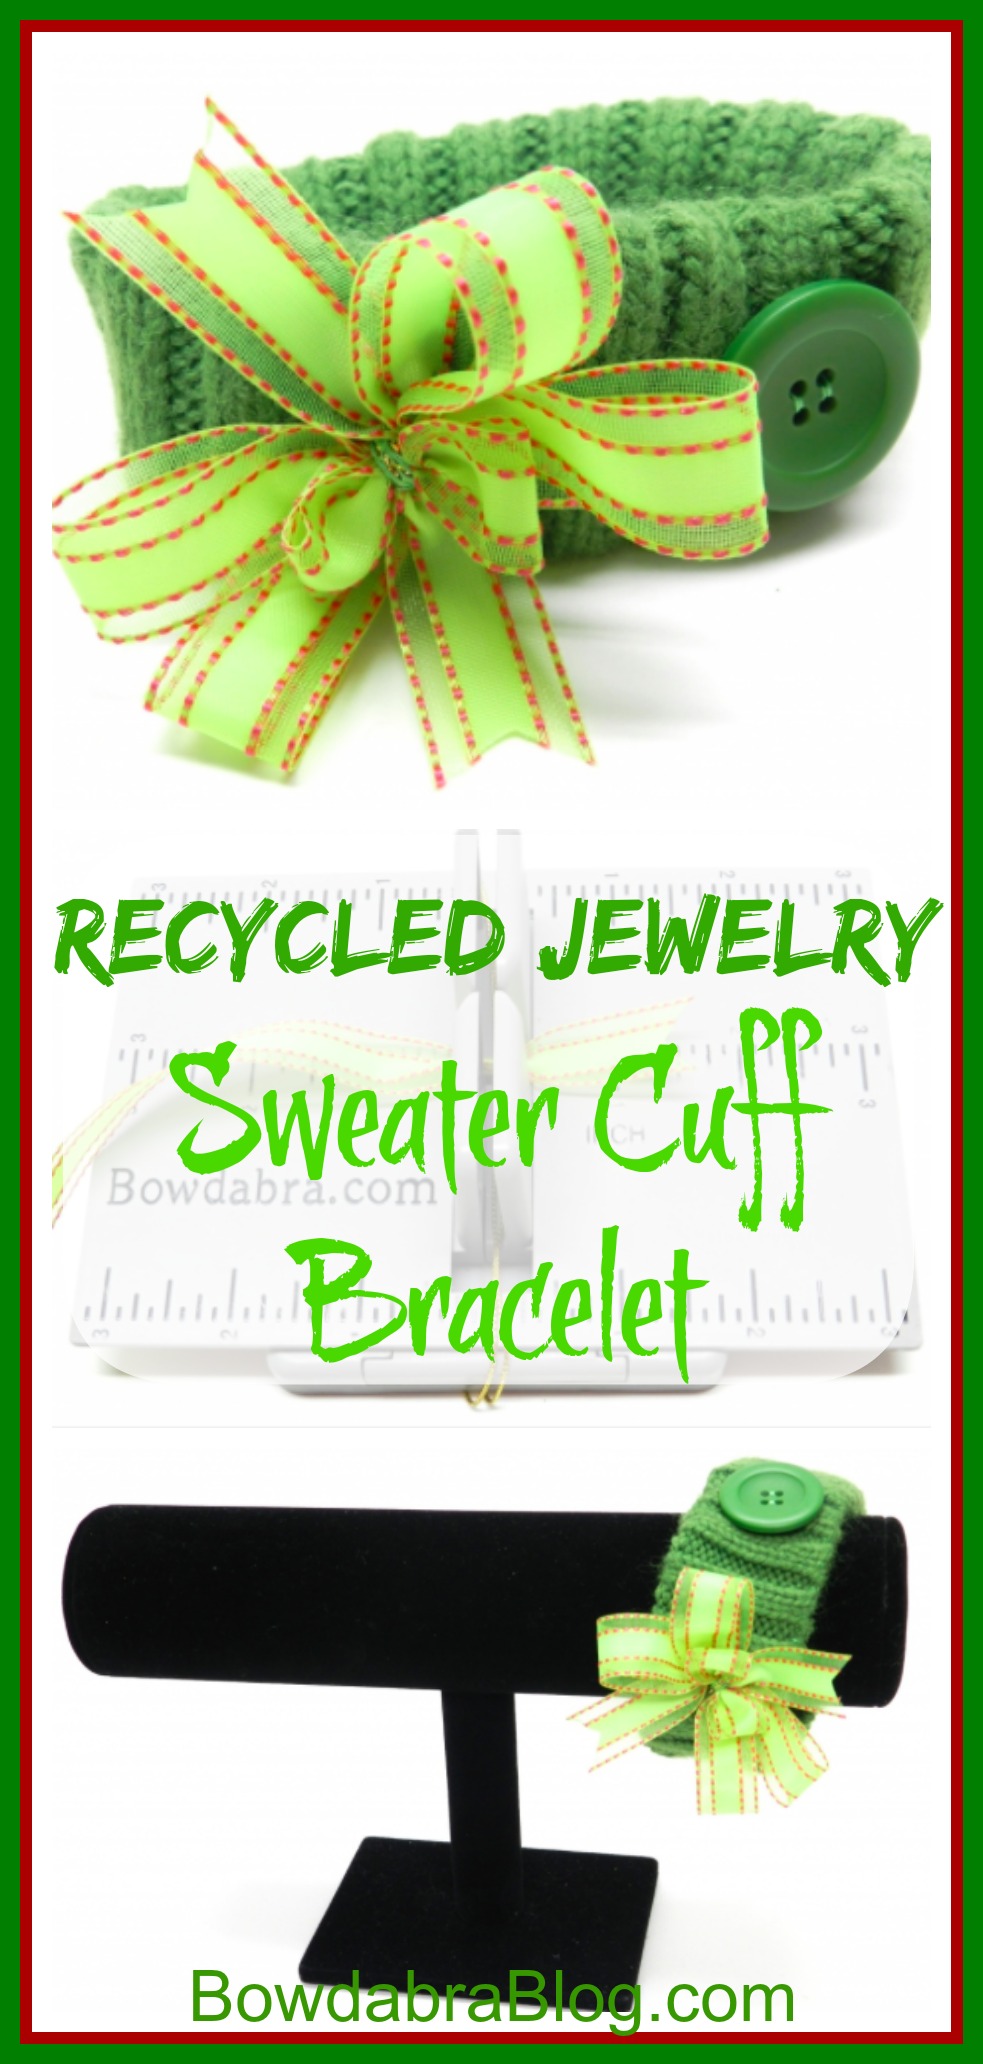 Recycled Jewelry Sweater Cuff Bracelet